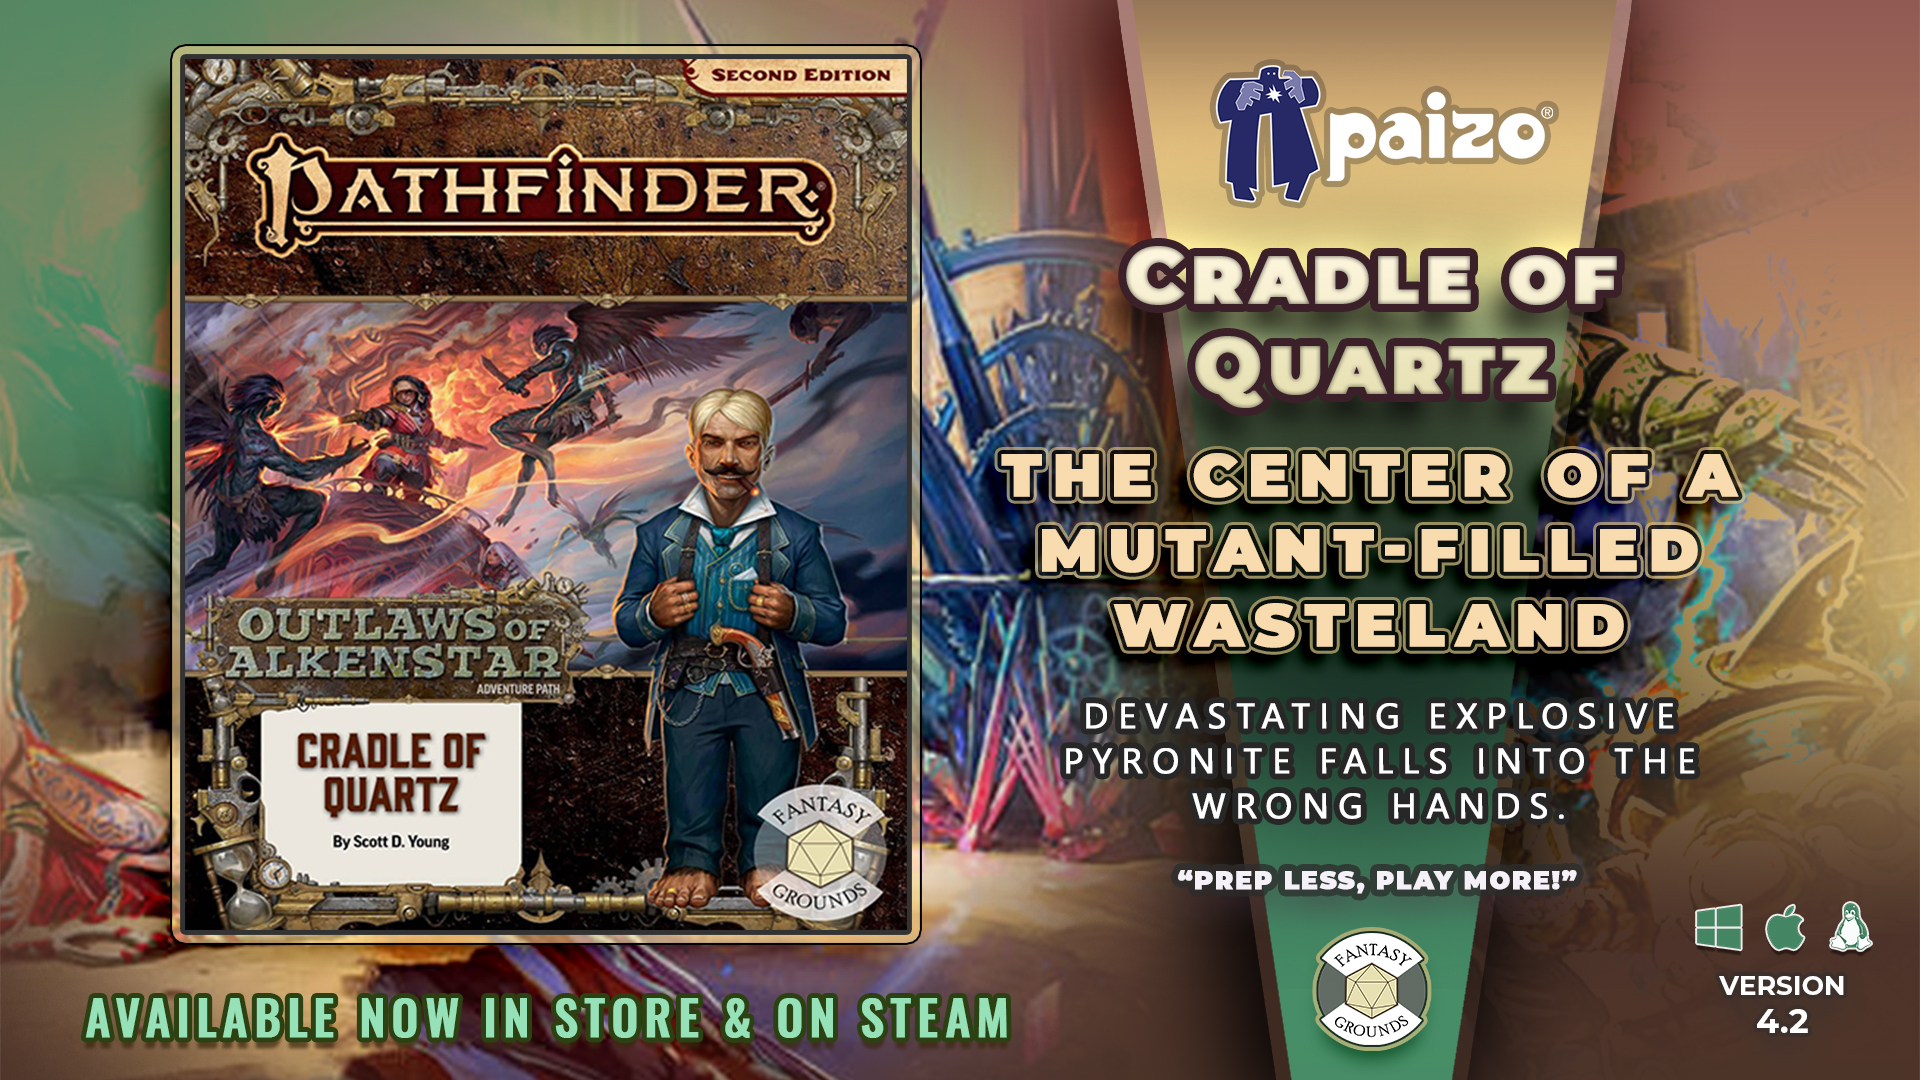 Pathfinder 2 RPG - Outlaws of Alkenstar AP 2 Cradle of Quartz.jpg